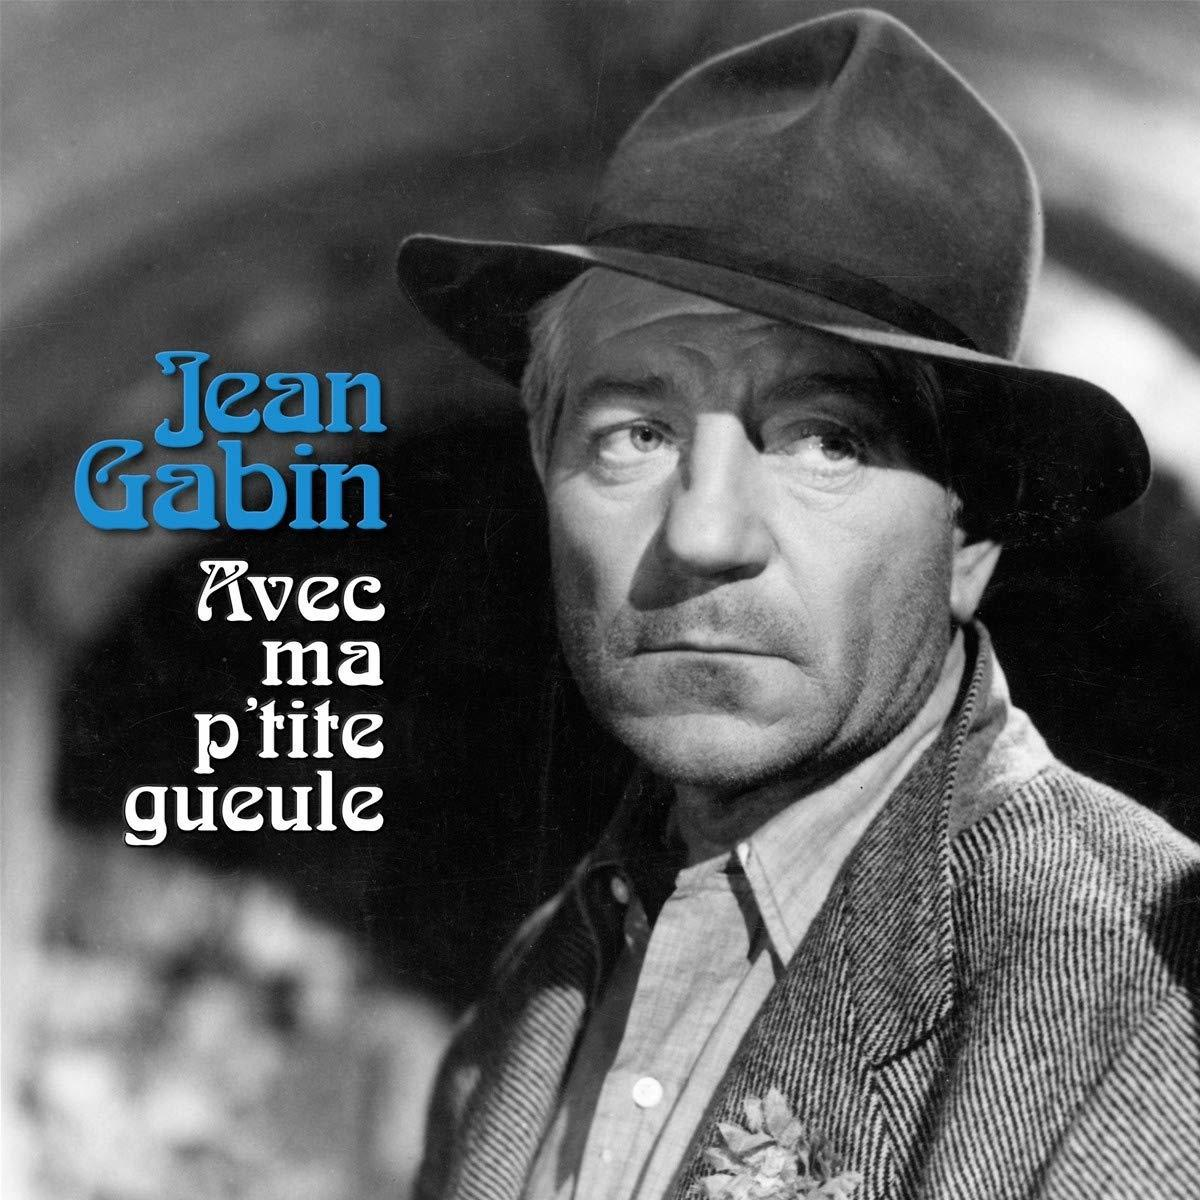 Jean Gabin - Avec Ma P\'Tite - Gueule (Vinyl)